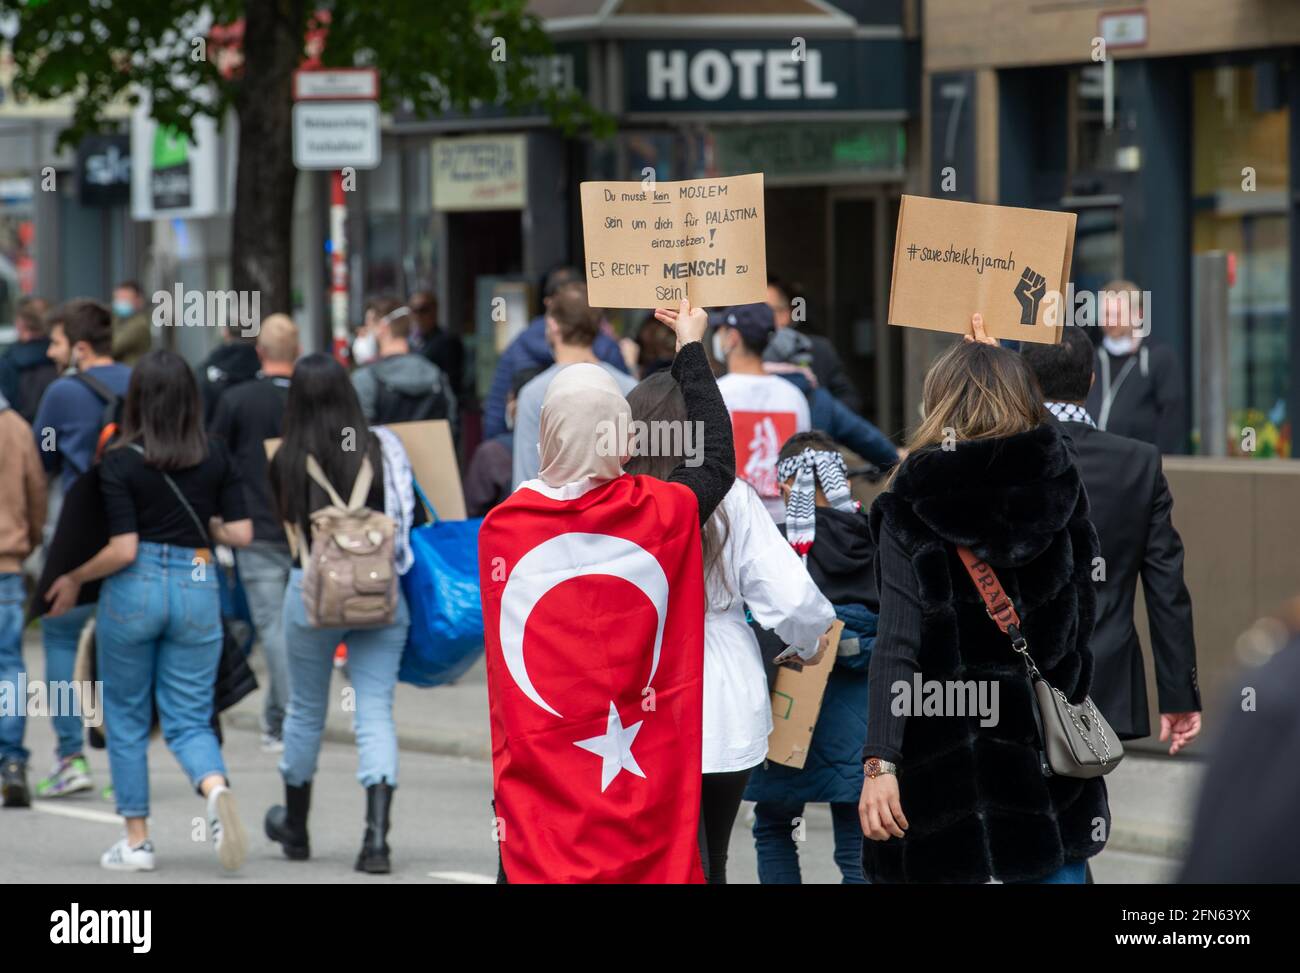 Demonstrantin mit Türkei Flagge: ' Du musst kein Moslem sein, um dich für Palästina einzusetzen! Es reicht Mensch zu sein! ' Demonstrantin hält ein Schild mit der Aufschrift: ' Save Sheikh Jarrah '. Ca. 1000 Menschen versammelten sich am 14. Mai in München, um ihre Solidarität mit den Palästinenser*innen und den Menschen in Gaza zu zeigen. * Demonstrator wearing a Turkey flag: ' You don't have to be a muslim to show commitment for Palestine! You only have to be human! ' Demonstrator holds sign reading: ' Save Sheikh Jarrah '. Around 1000 people spontaneosly gathered on May 14, 2021 in Munich Stock Photo